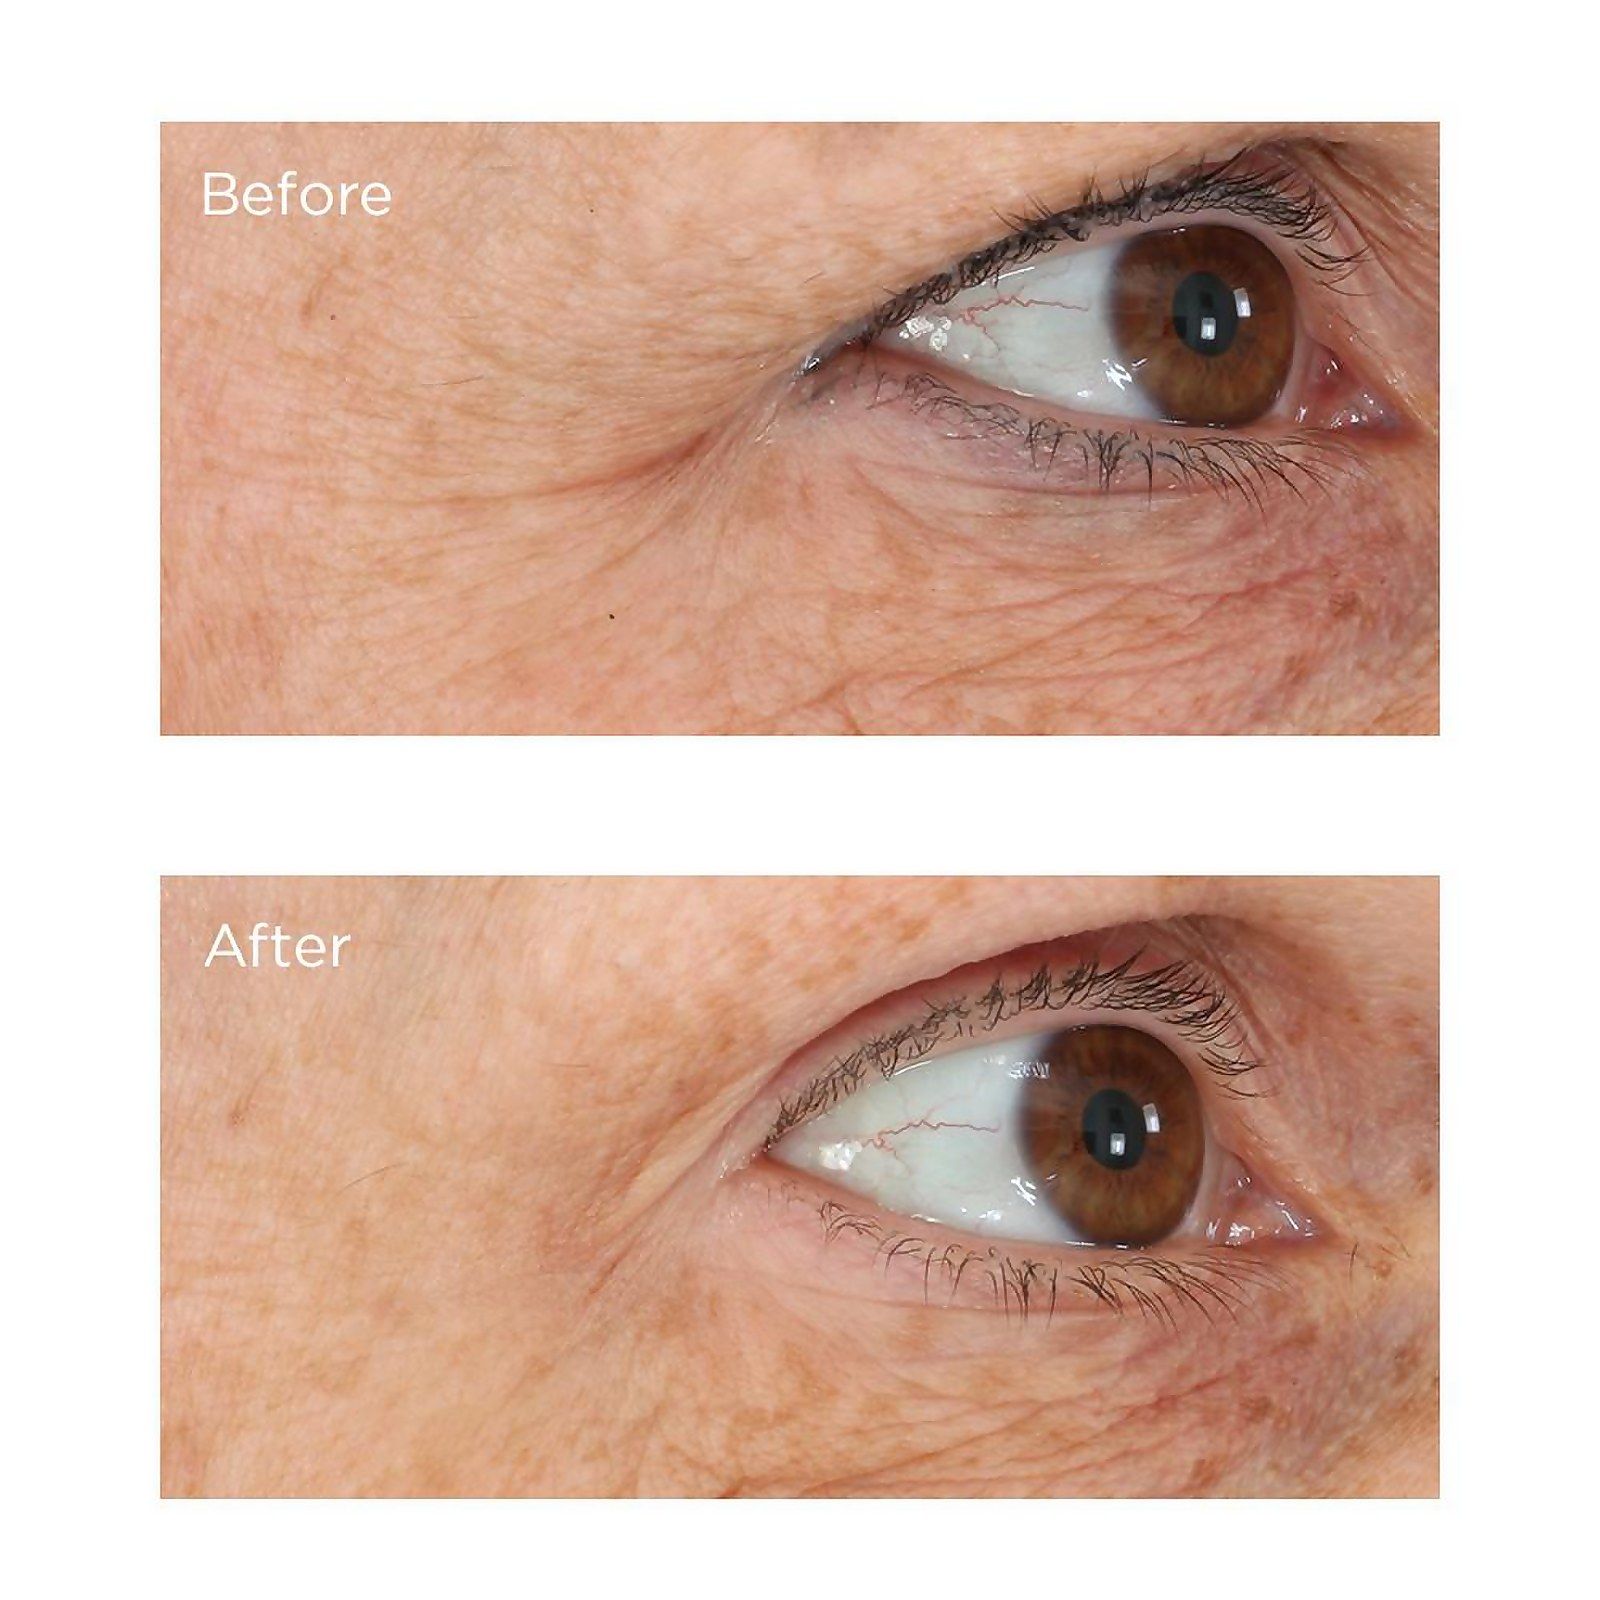 resultados antes y después de su producto para el contorno de ojos Perricone MD opiniones